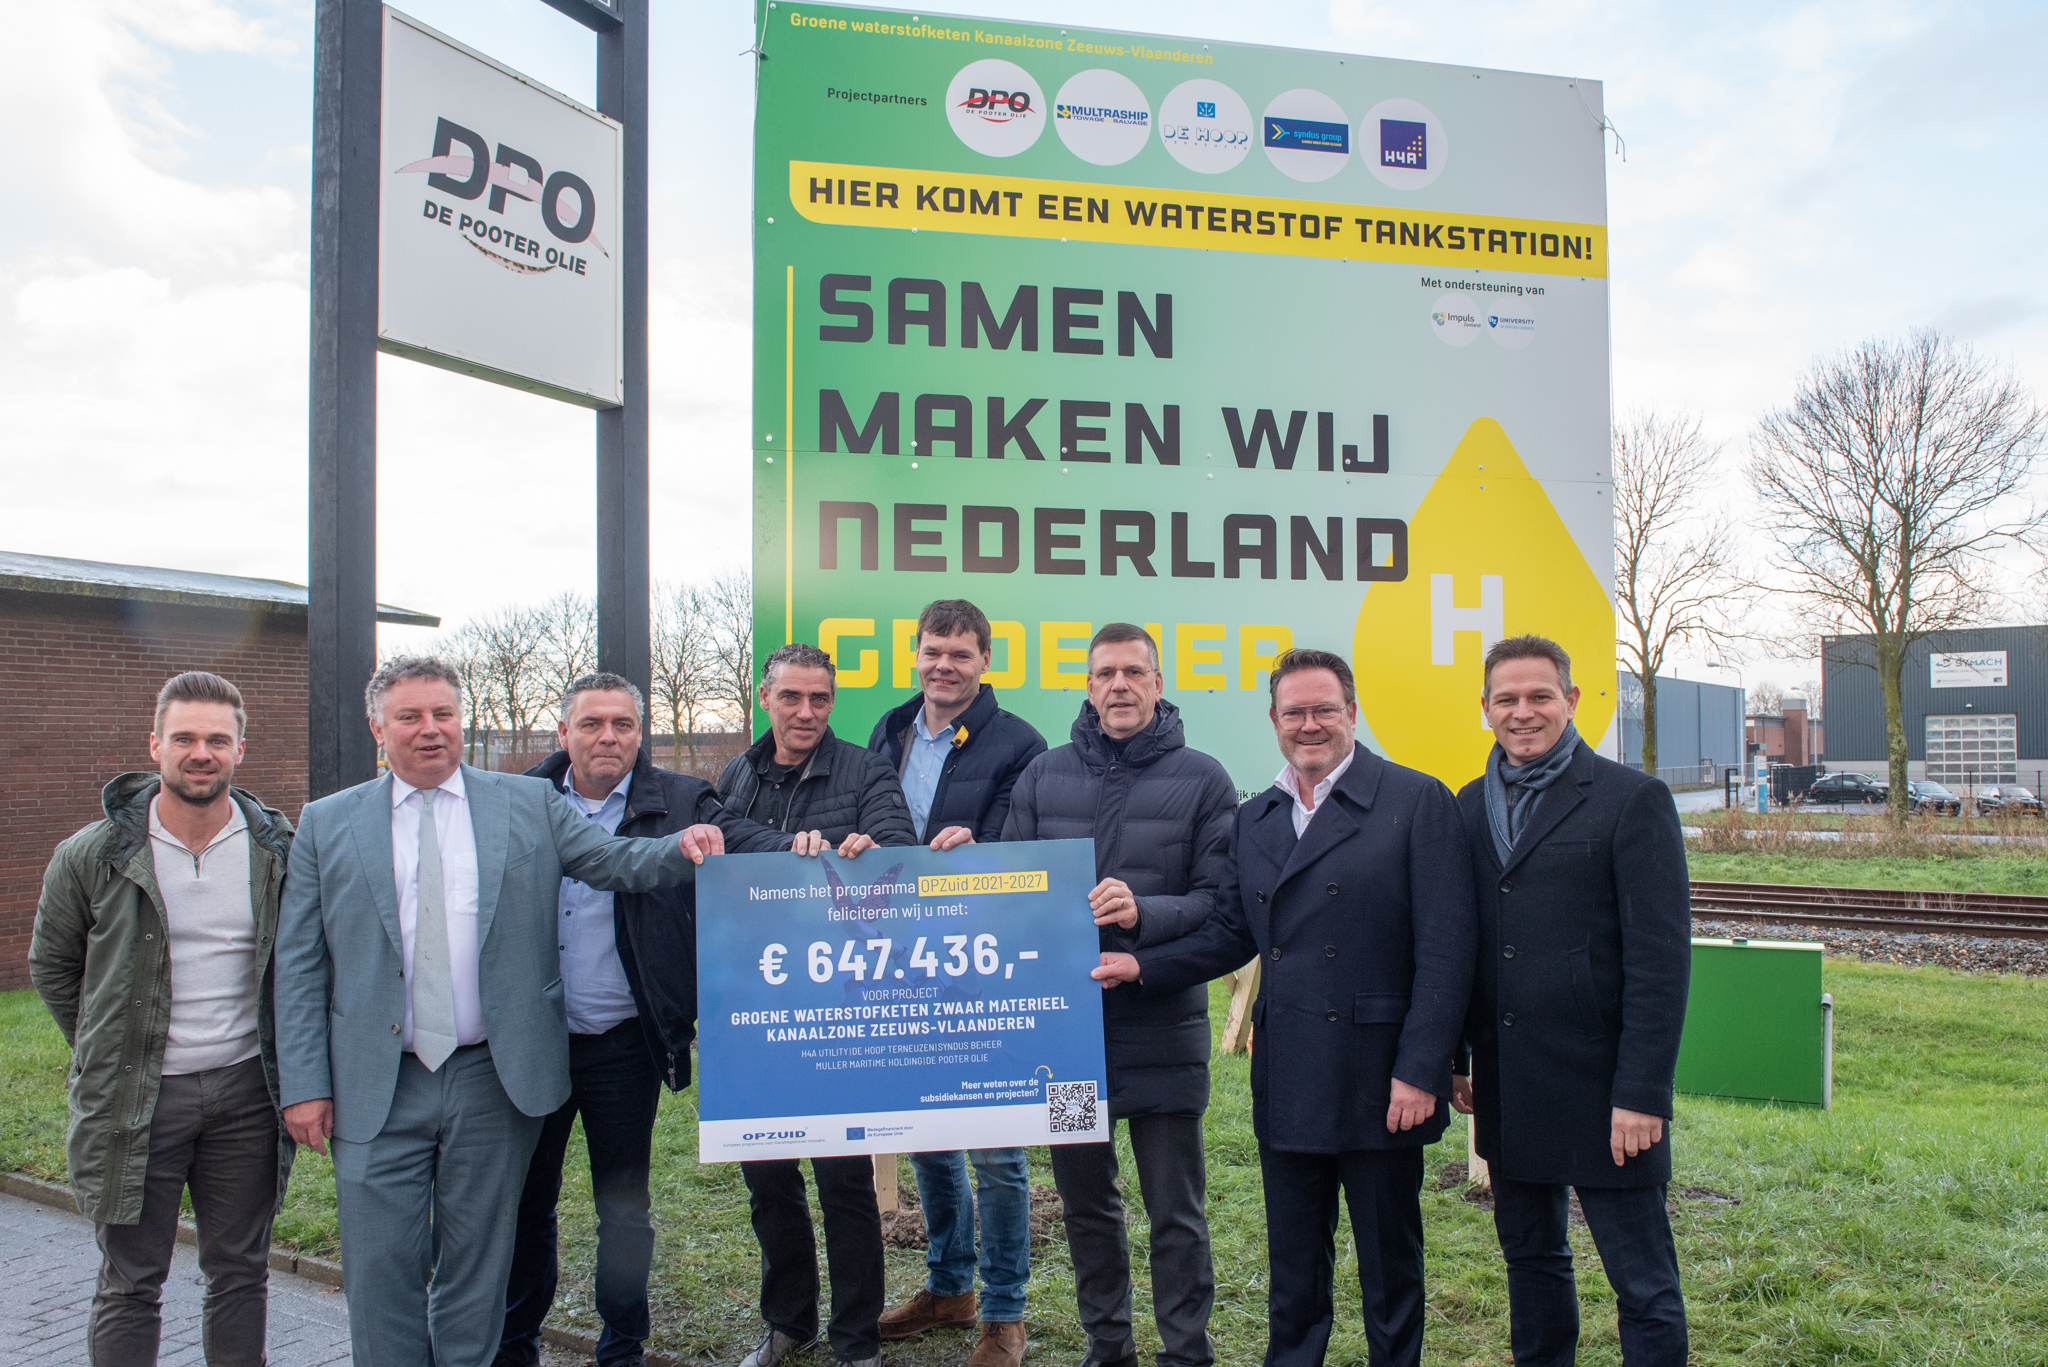 Kick-off Groene waterstofketen Kanaalzone Zeeuws-Vlaanderen